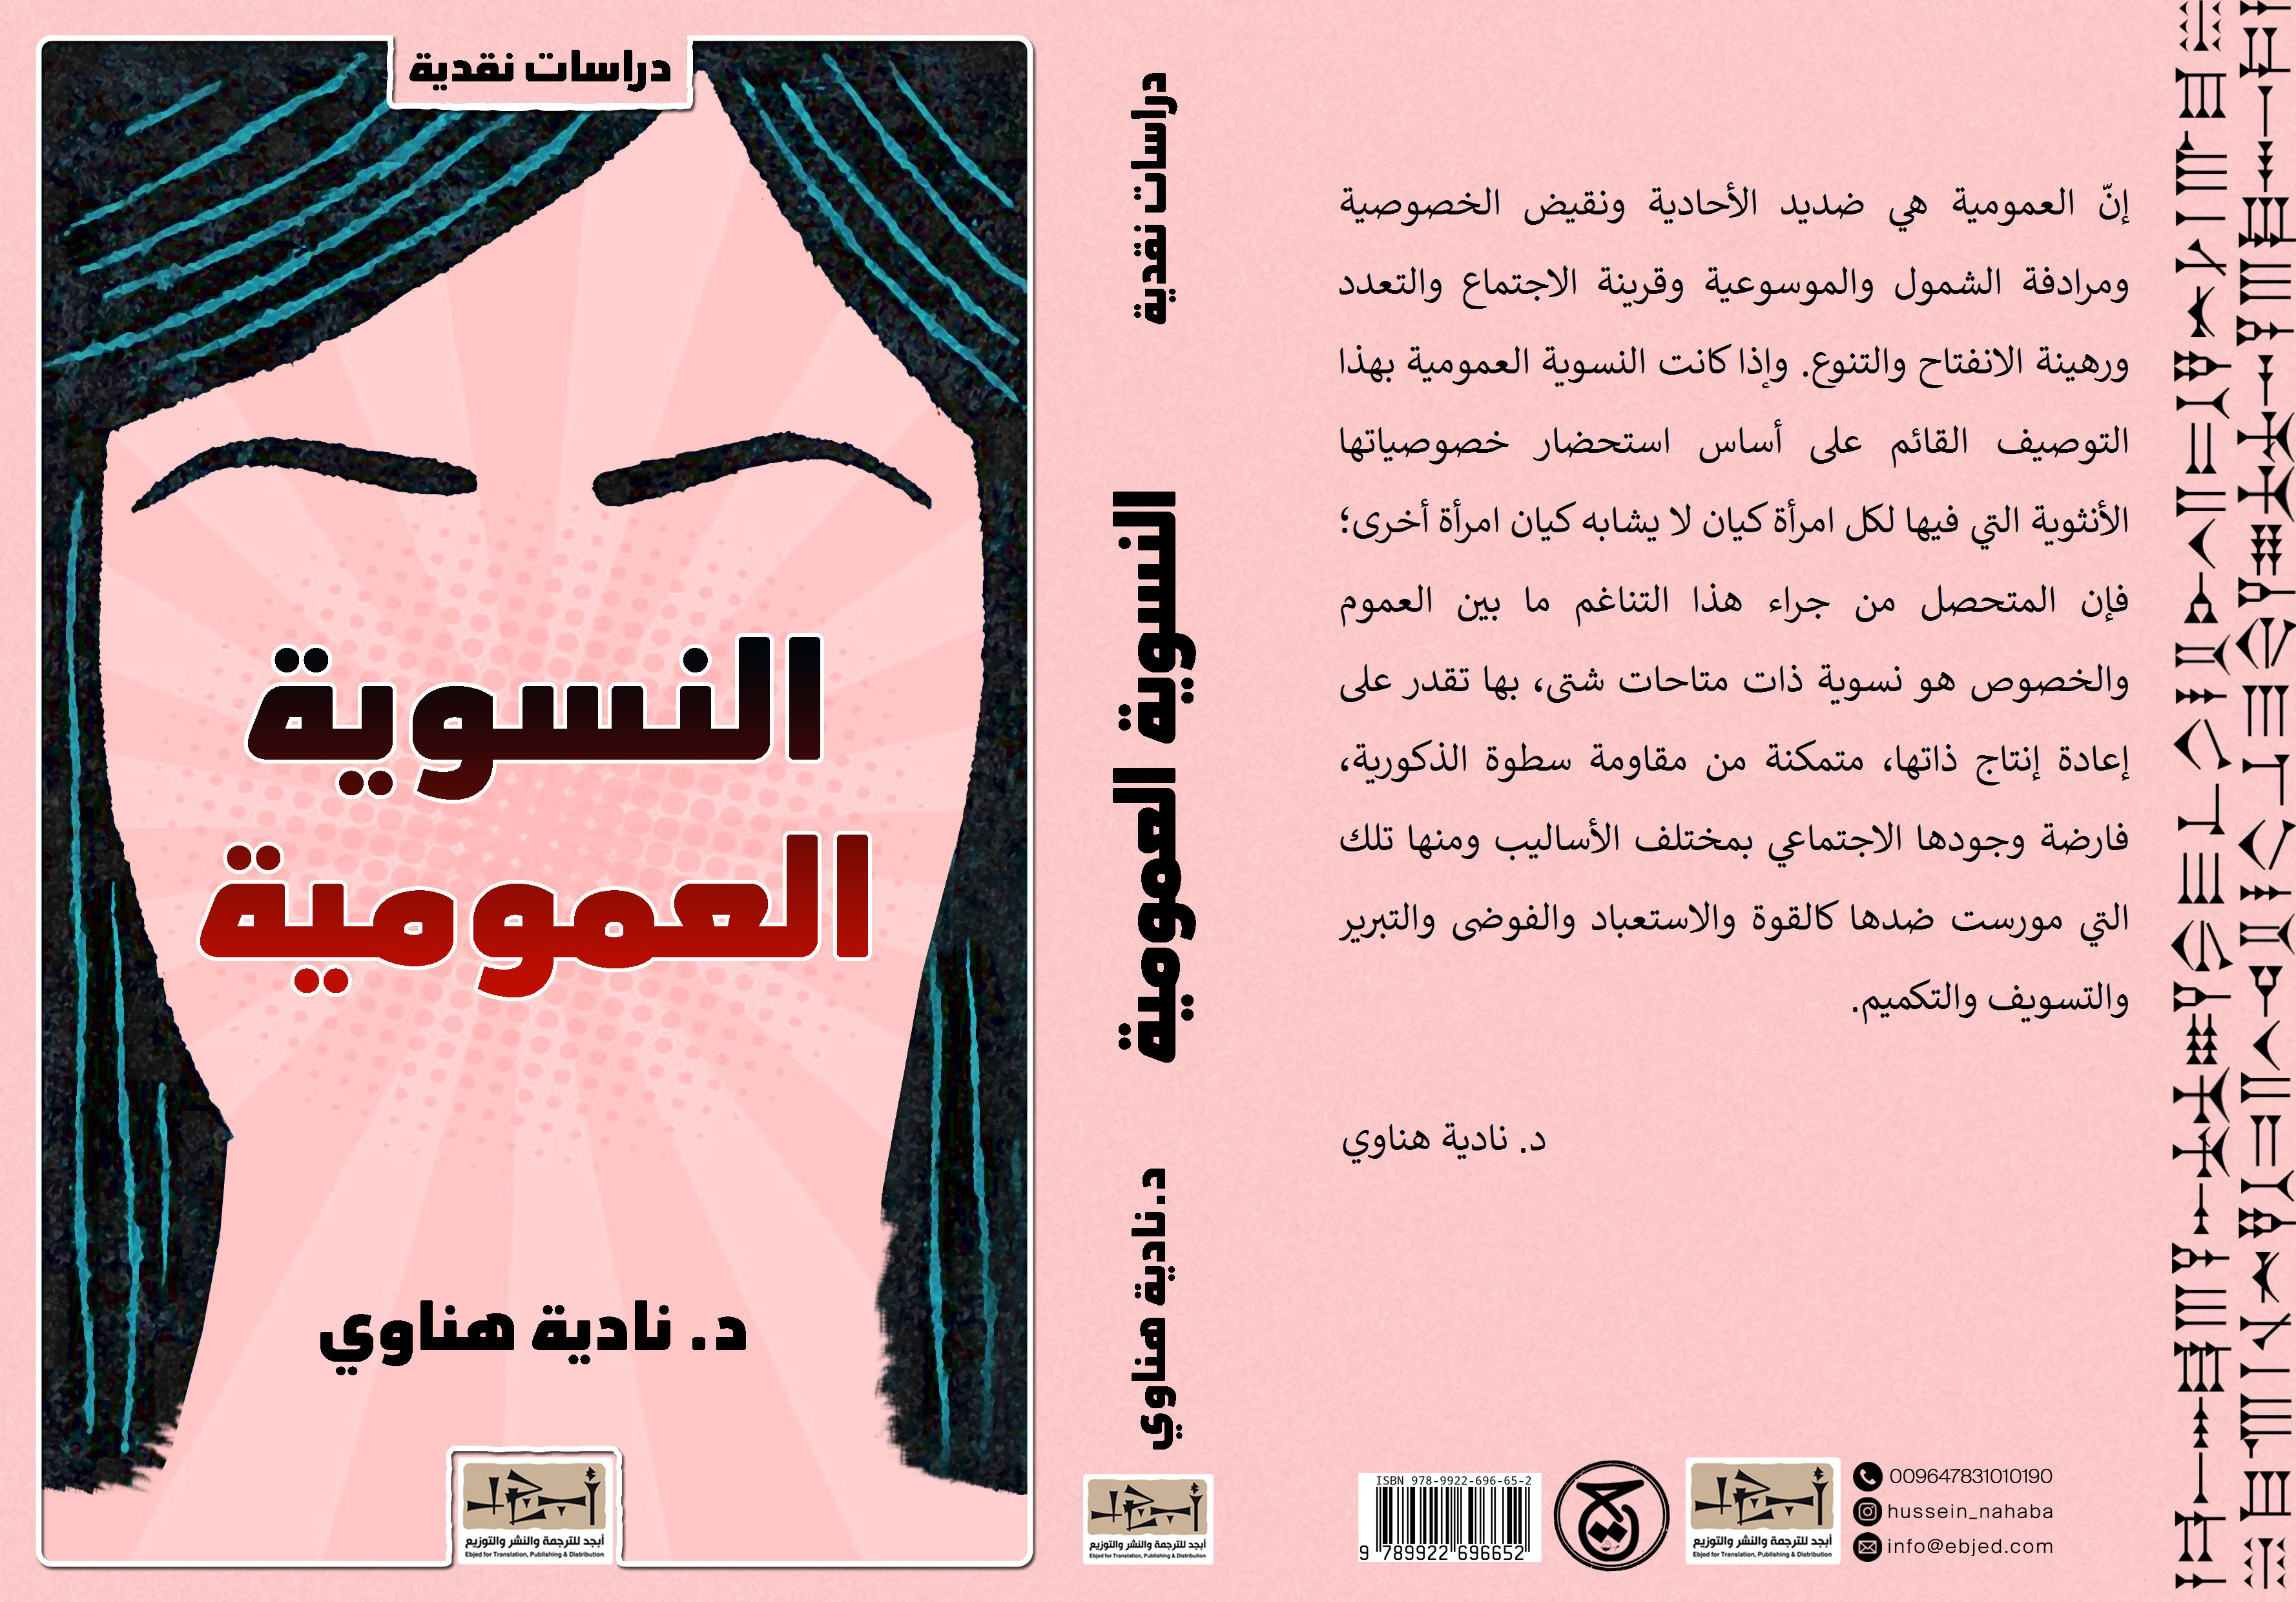 عنوان الكتاب: النسوية العمومية تأليف: د. نادية هناوي التصنيف: دراسات نقدية